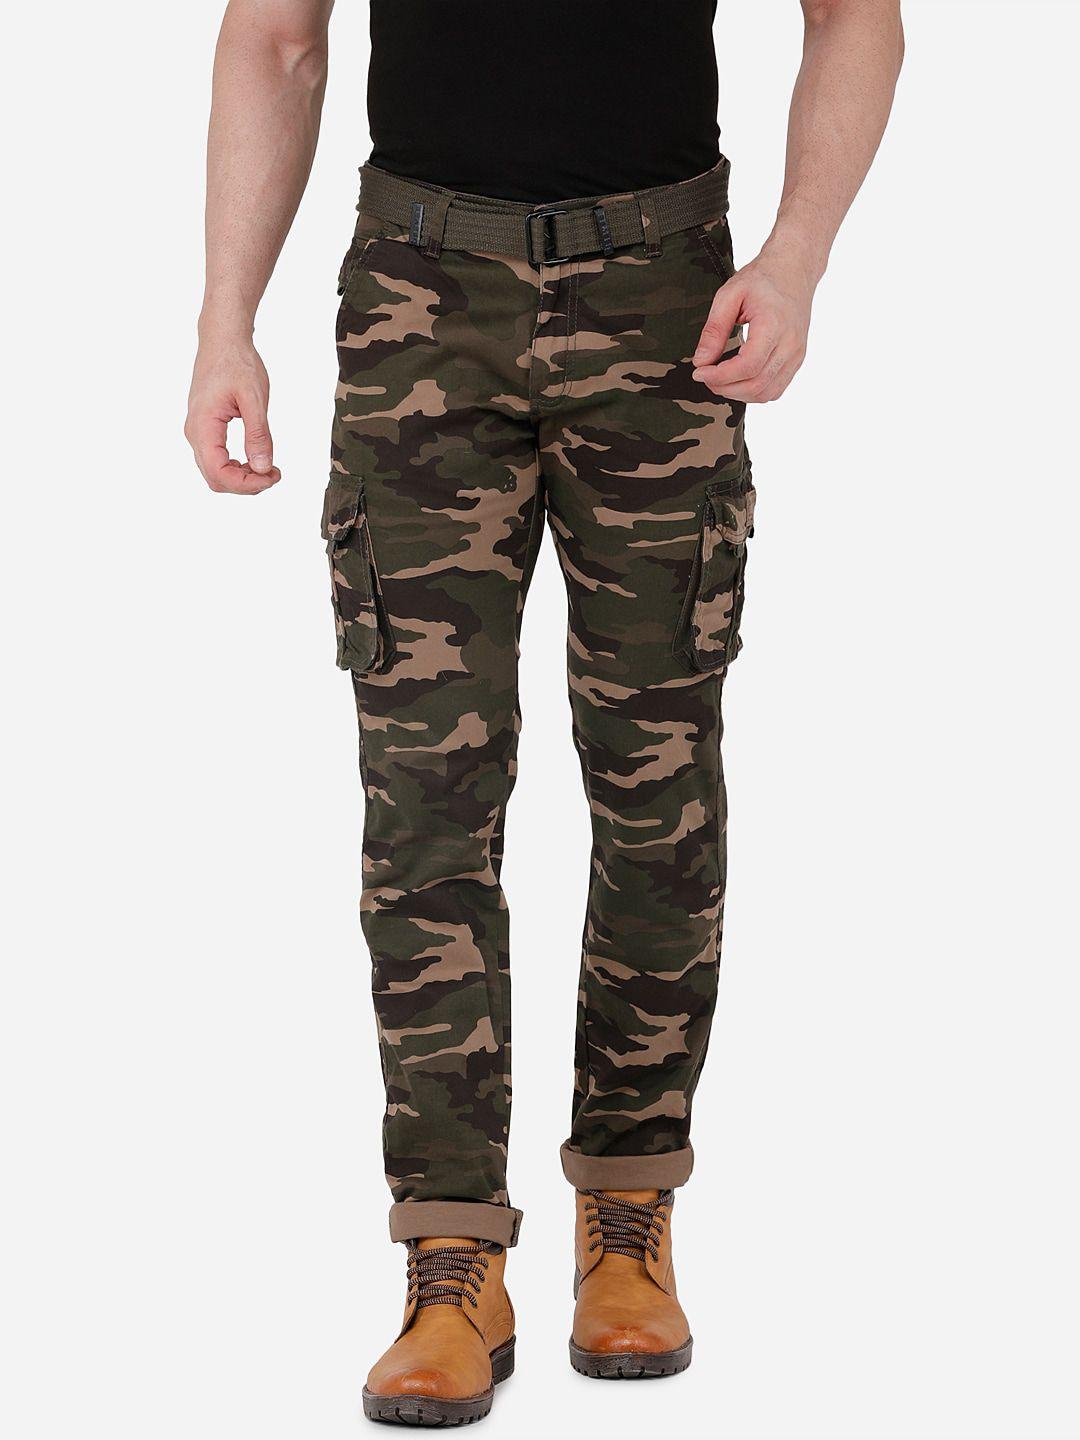 beevee men brown camouflage printed cargos trousers